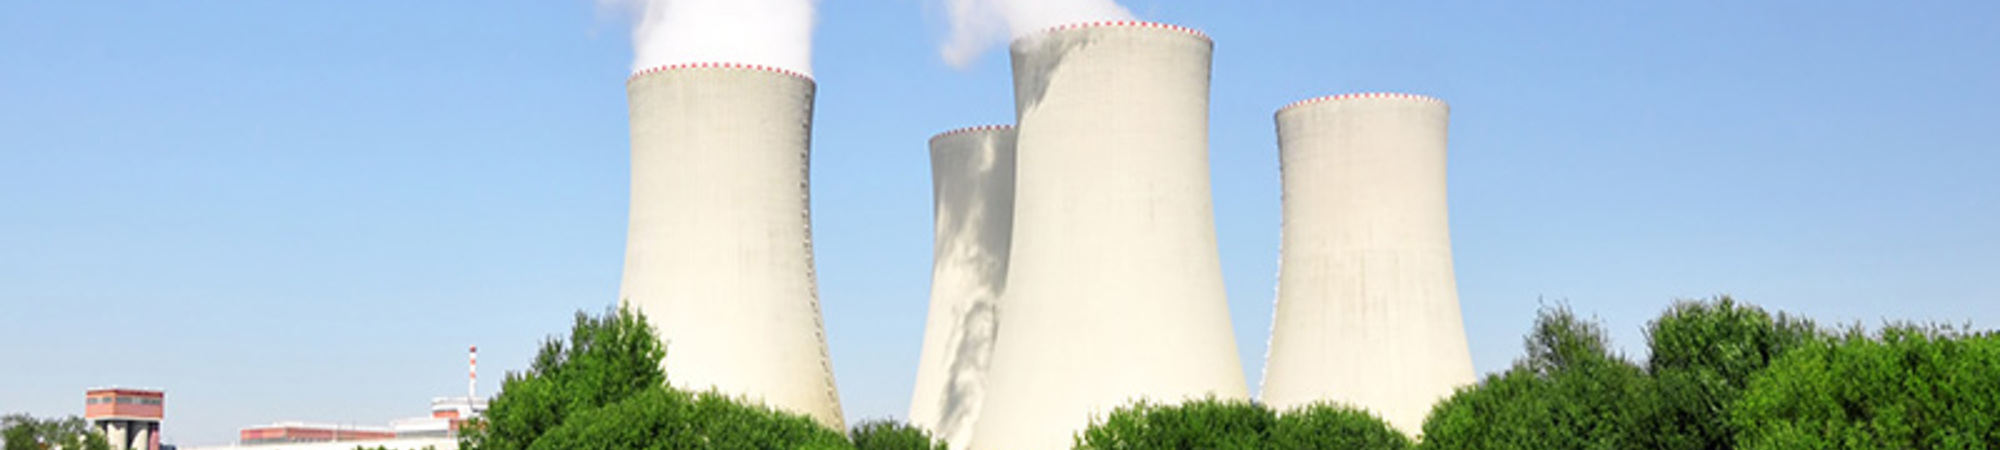 France Nuclear Power Blog 800x800